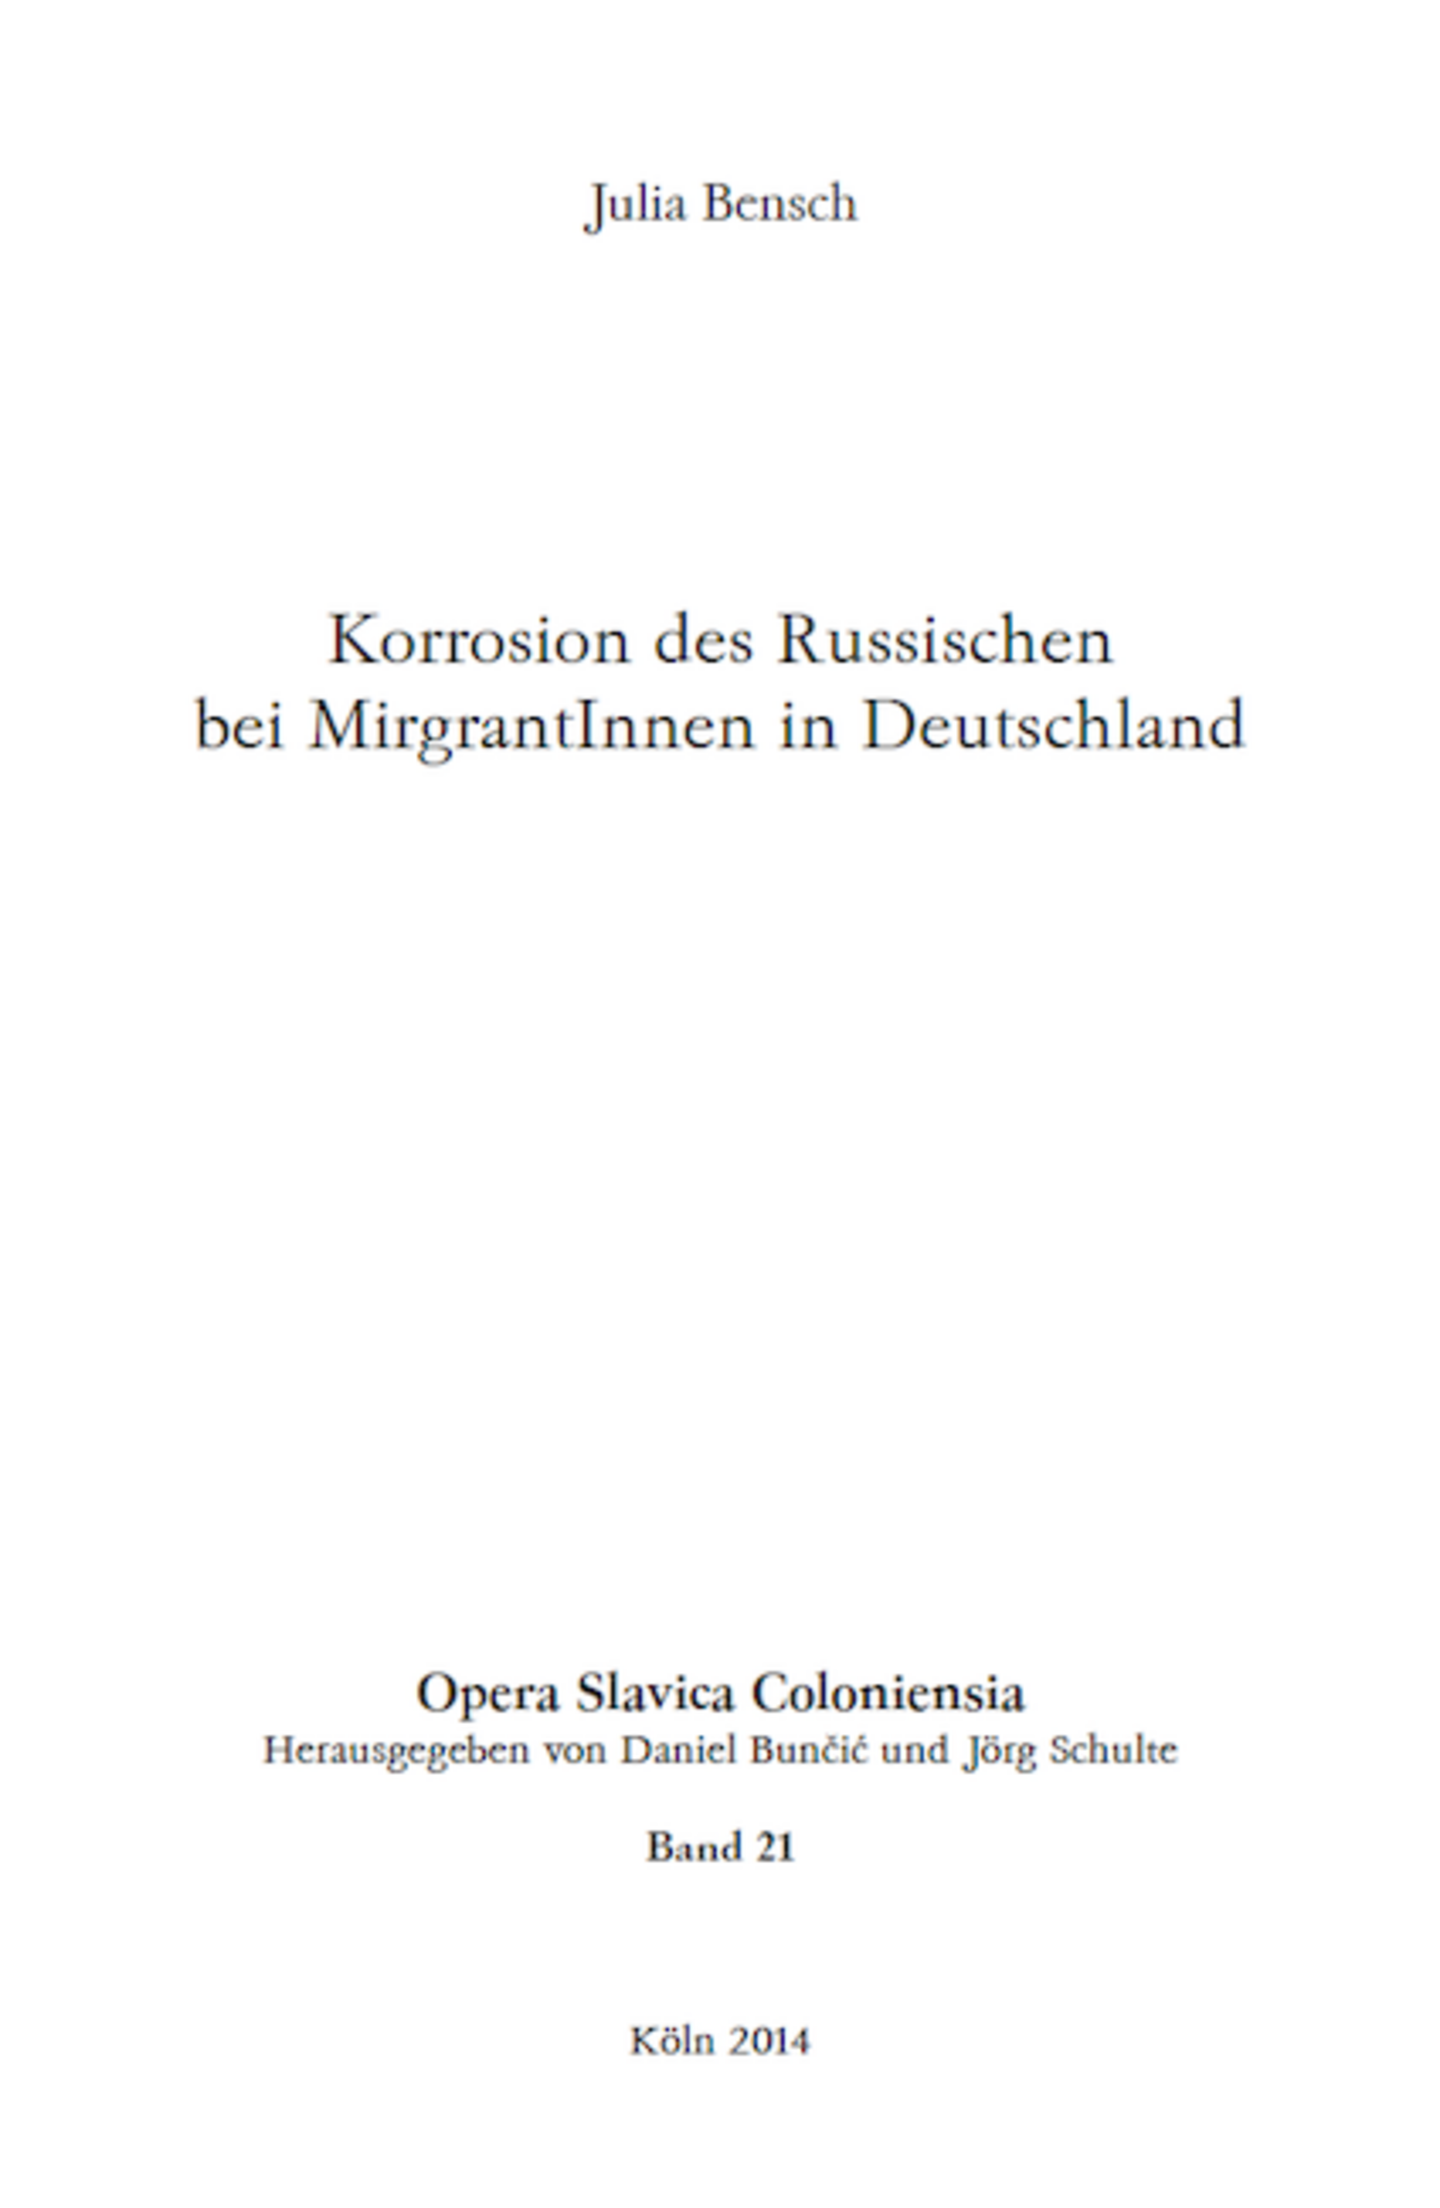 Opera Slavica Coloniensia, Bd. 21: Julia Bensch (2014) Korrosion des Russischen bei MigrantInnen in Deutschland